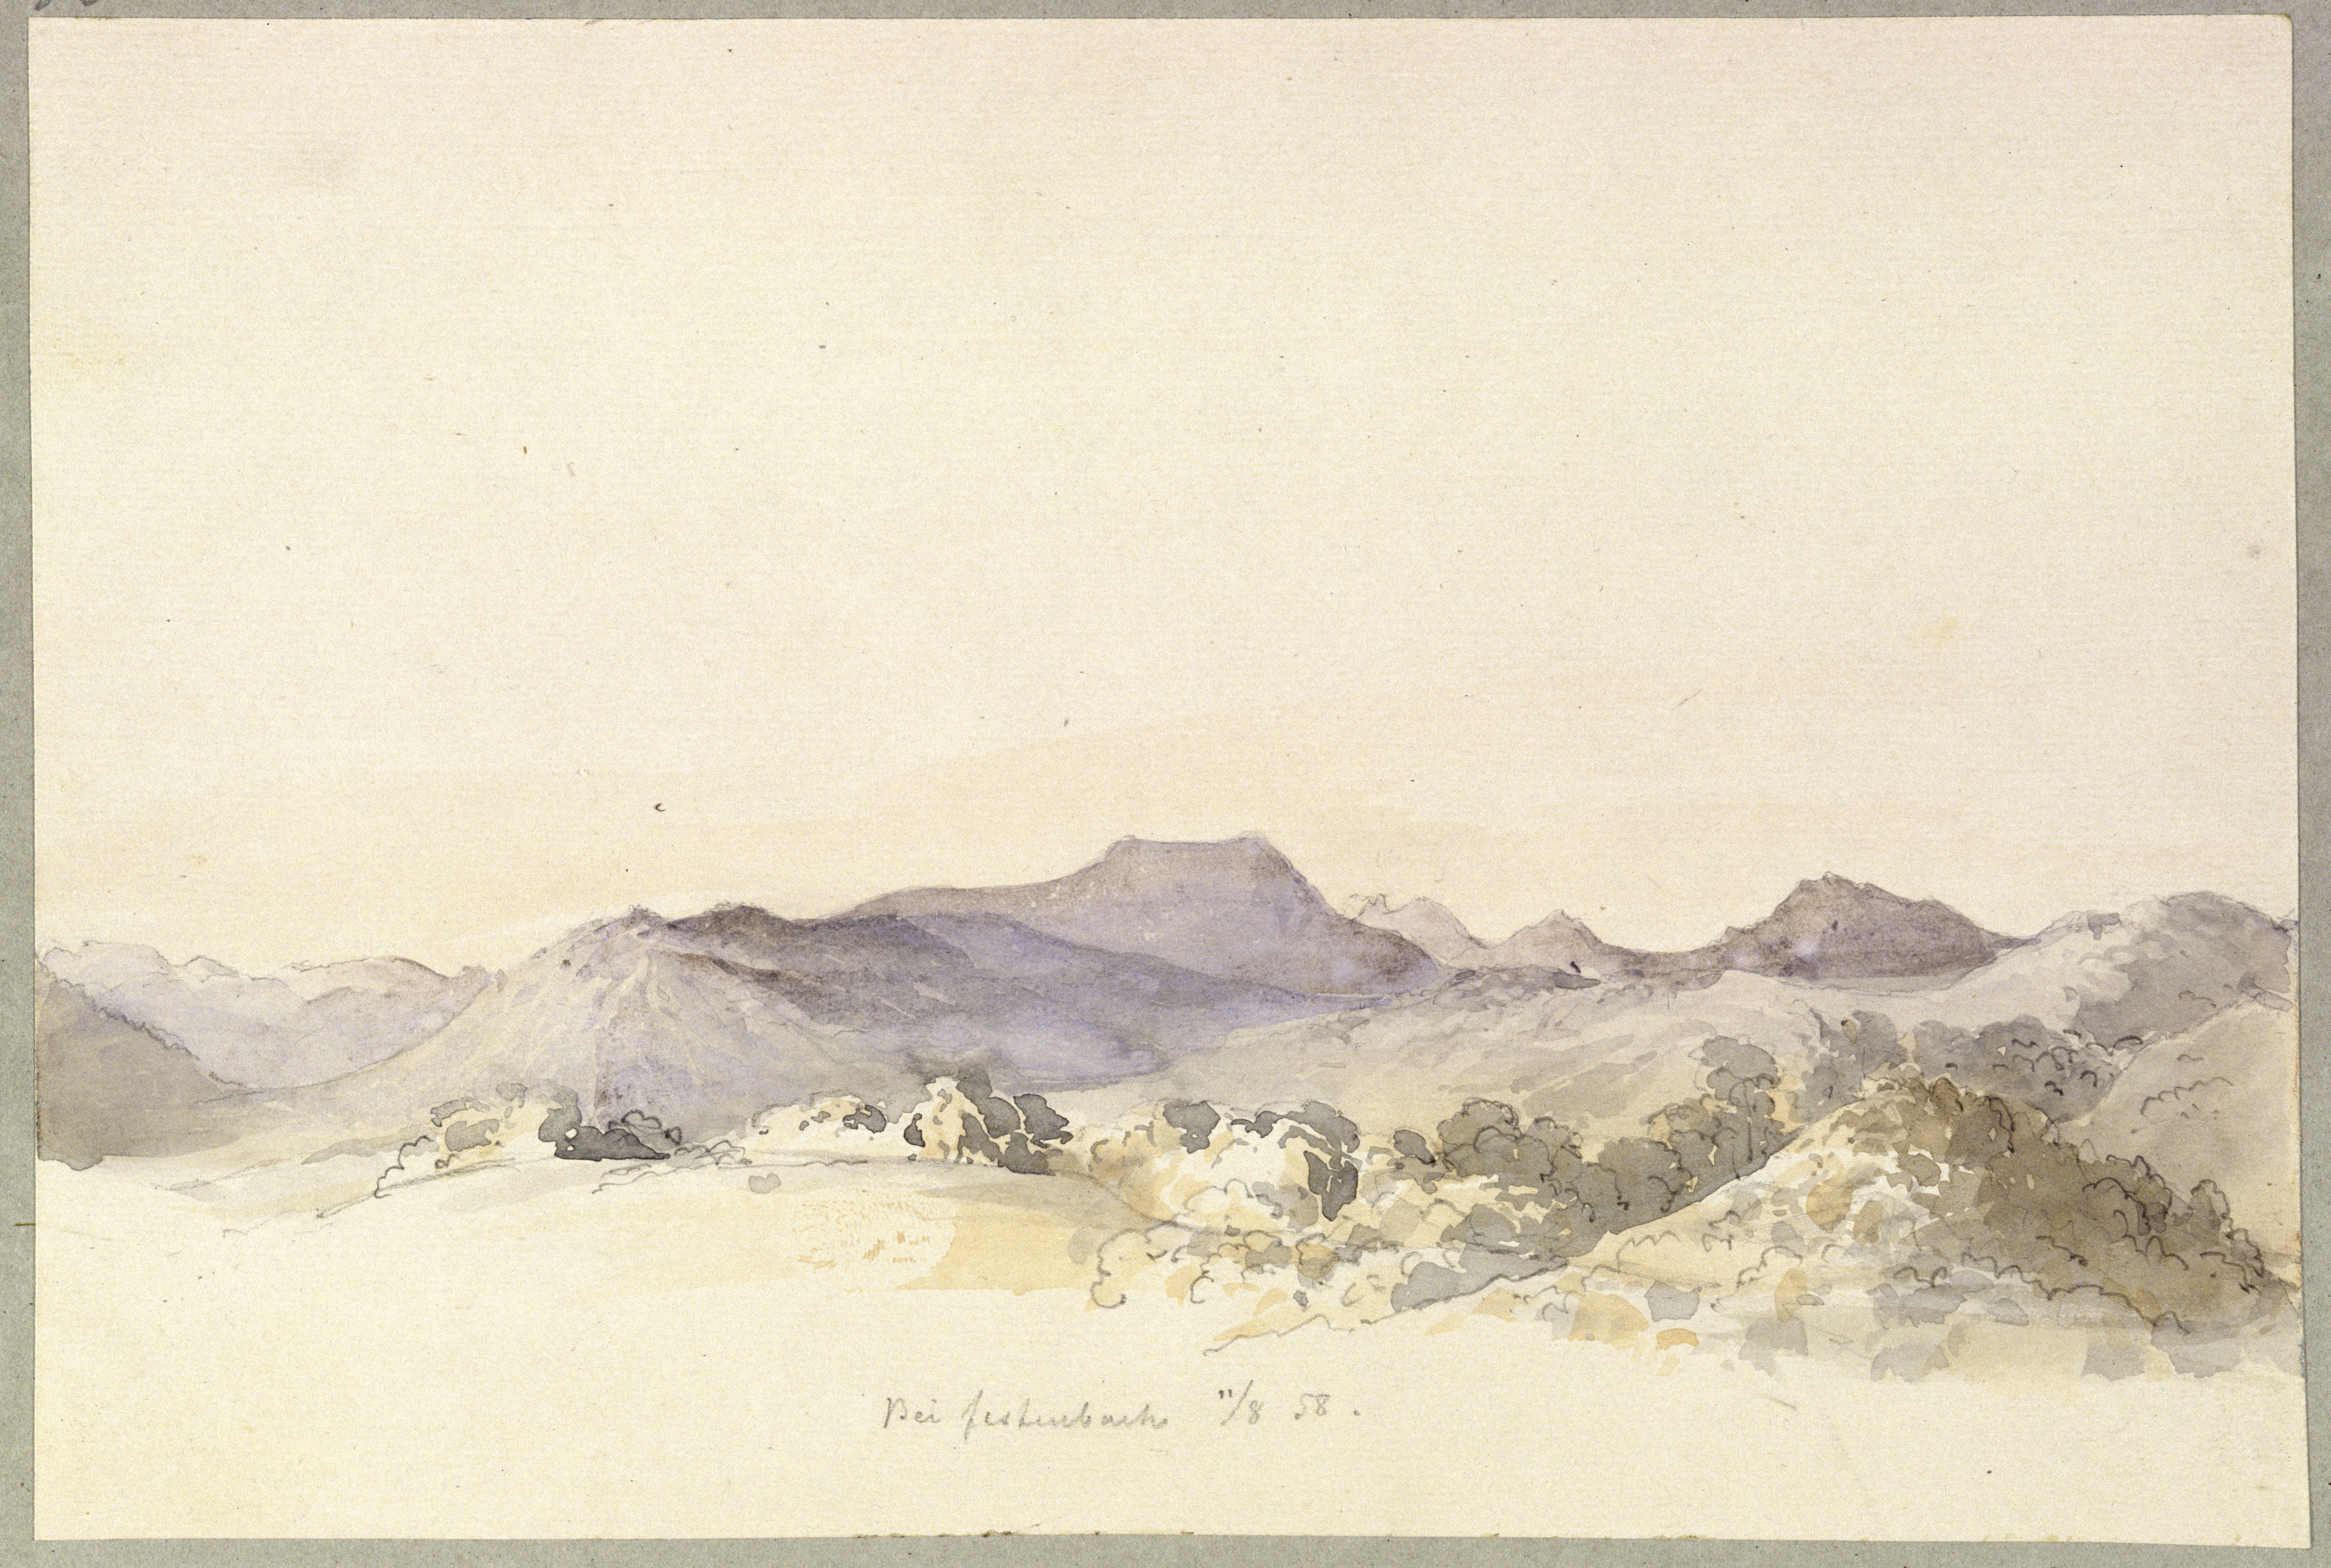 Stüler, Friedrich August: Alpenpanorama, 1858, SPSG, GK II (5) 3309. (Stiftung Preußische Schlösser und Gärten Berlin-Brandenburg CC BY-NC-SA)